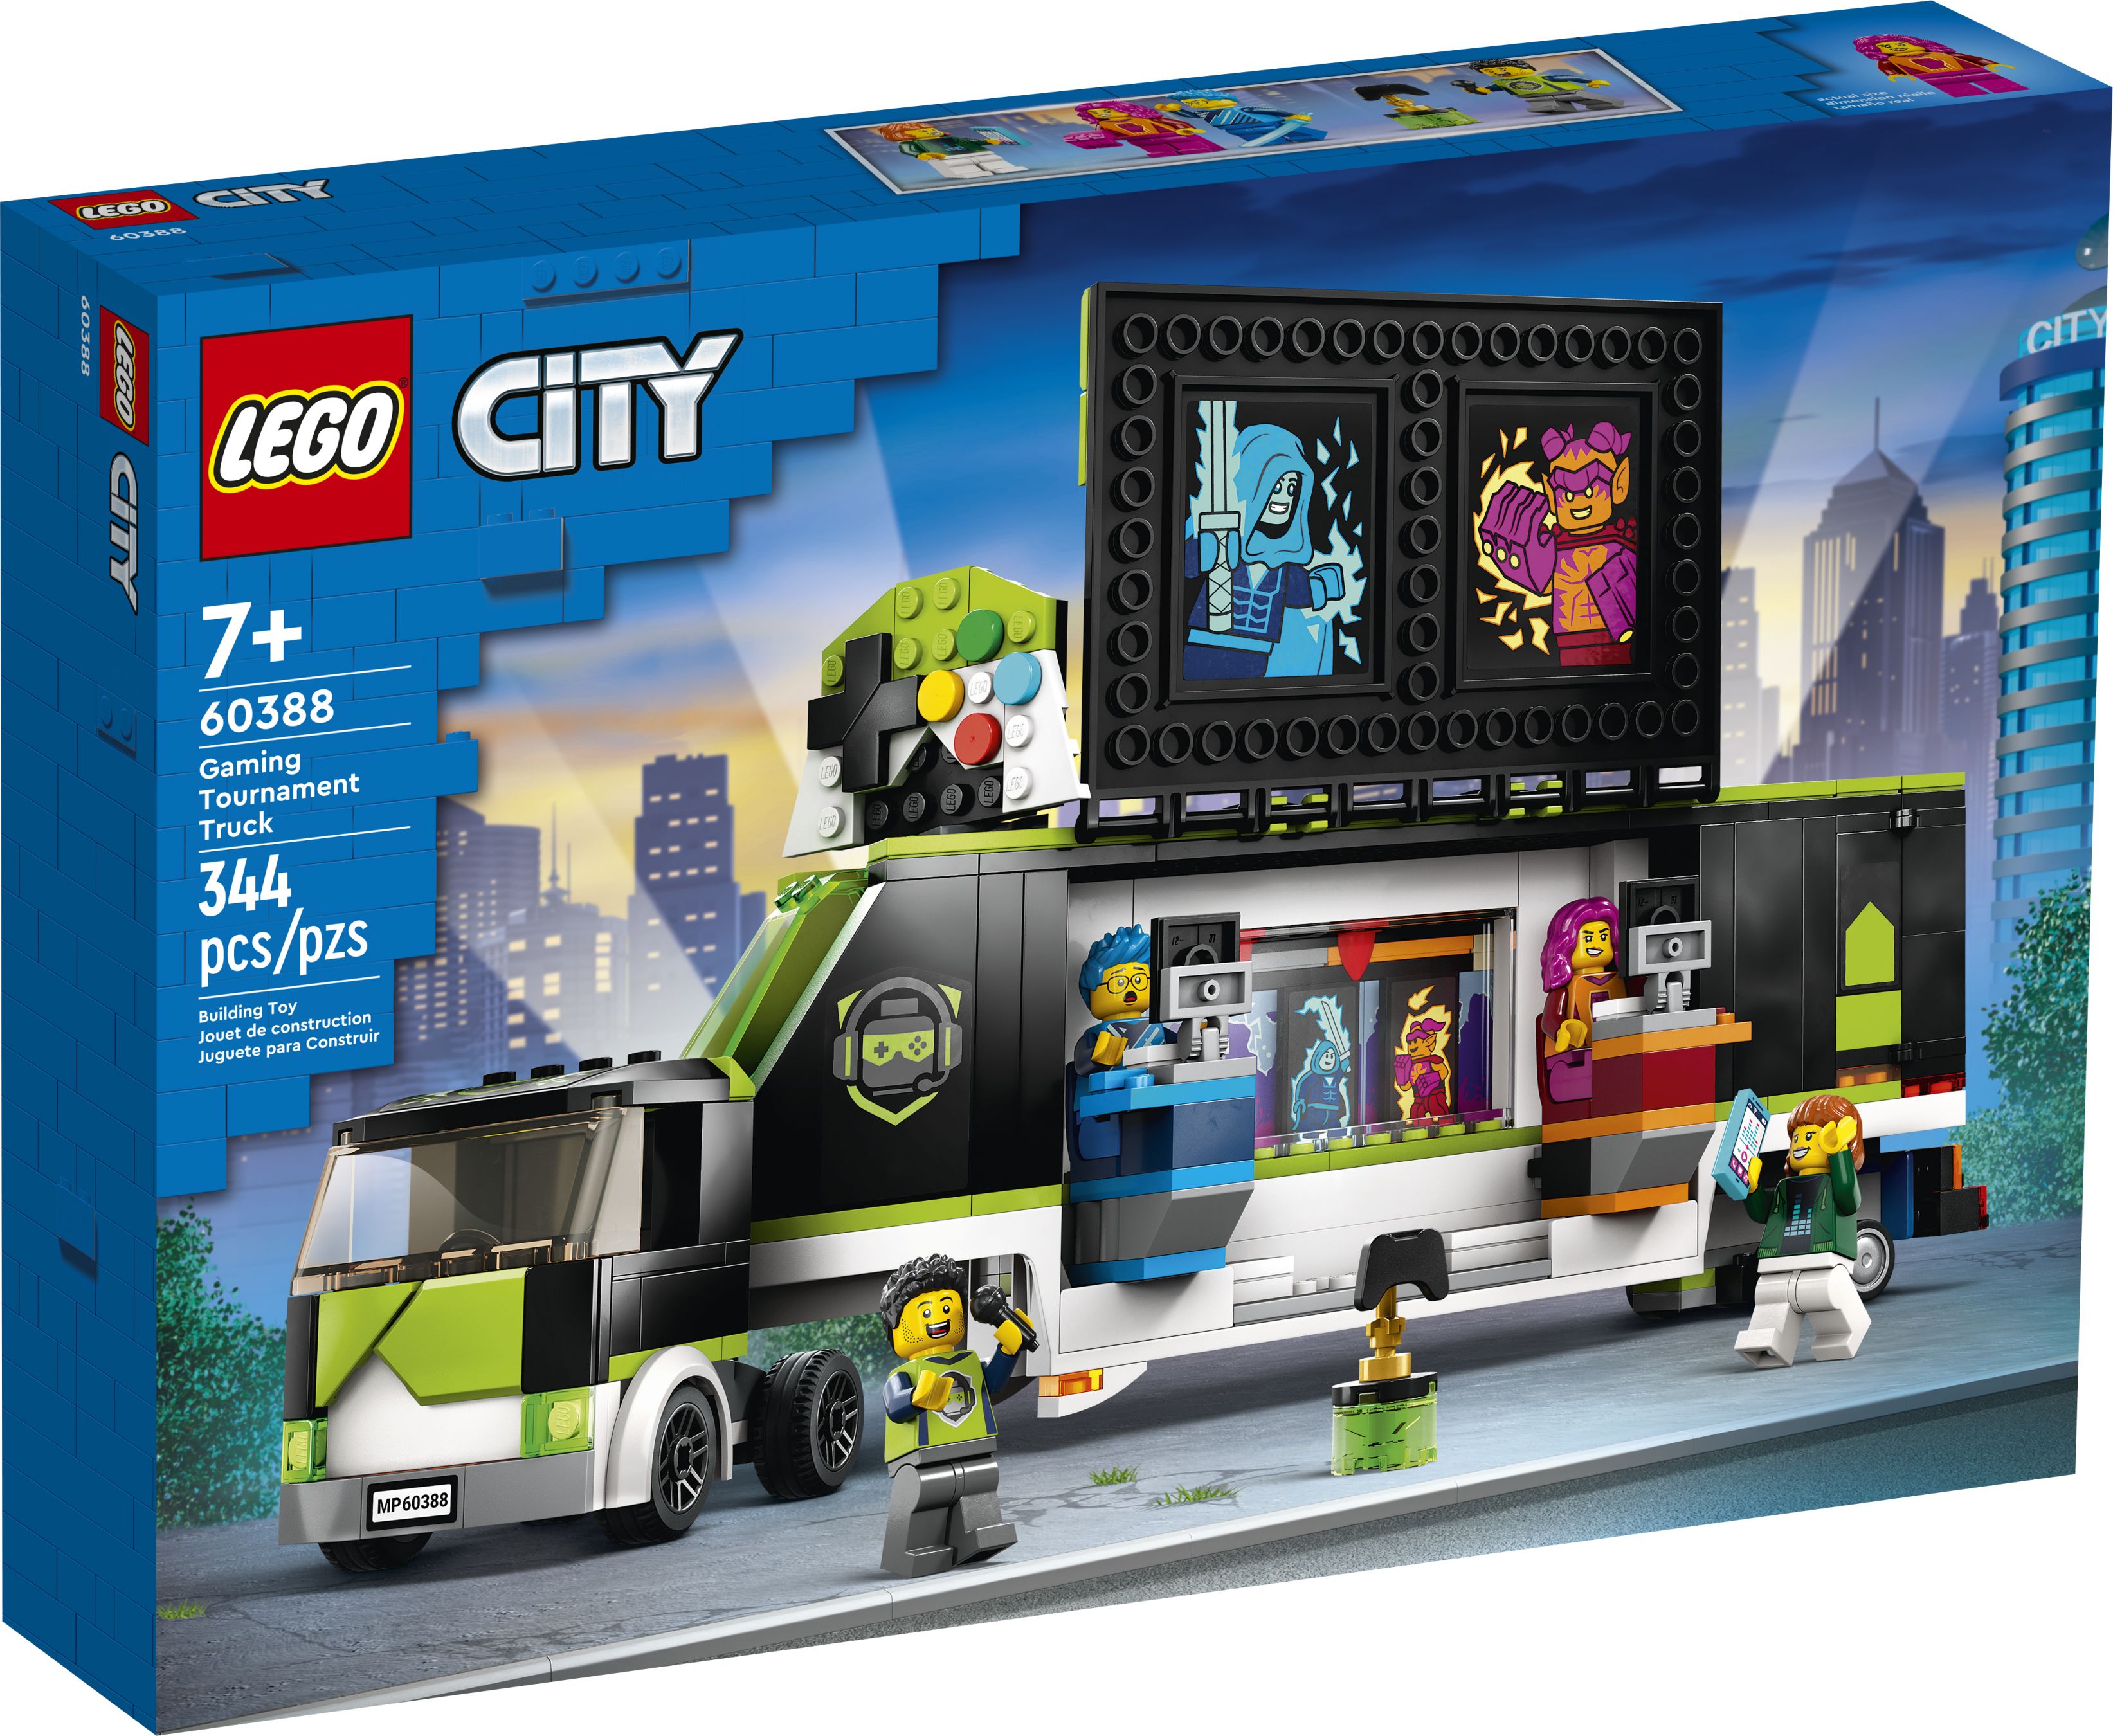 LEGO City 60388 Gaming Turnier Truck LEGO_60388_Box1_V39.jpg